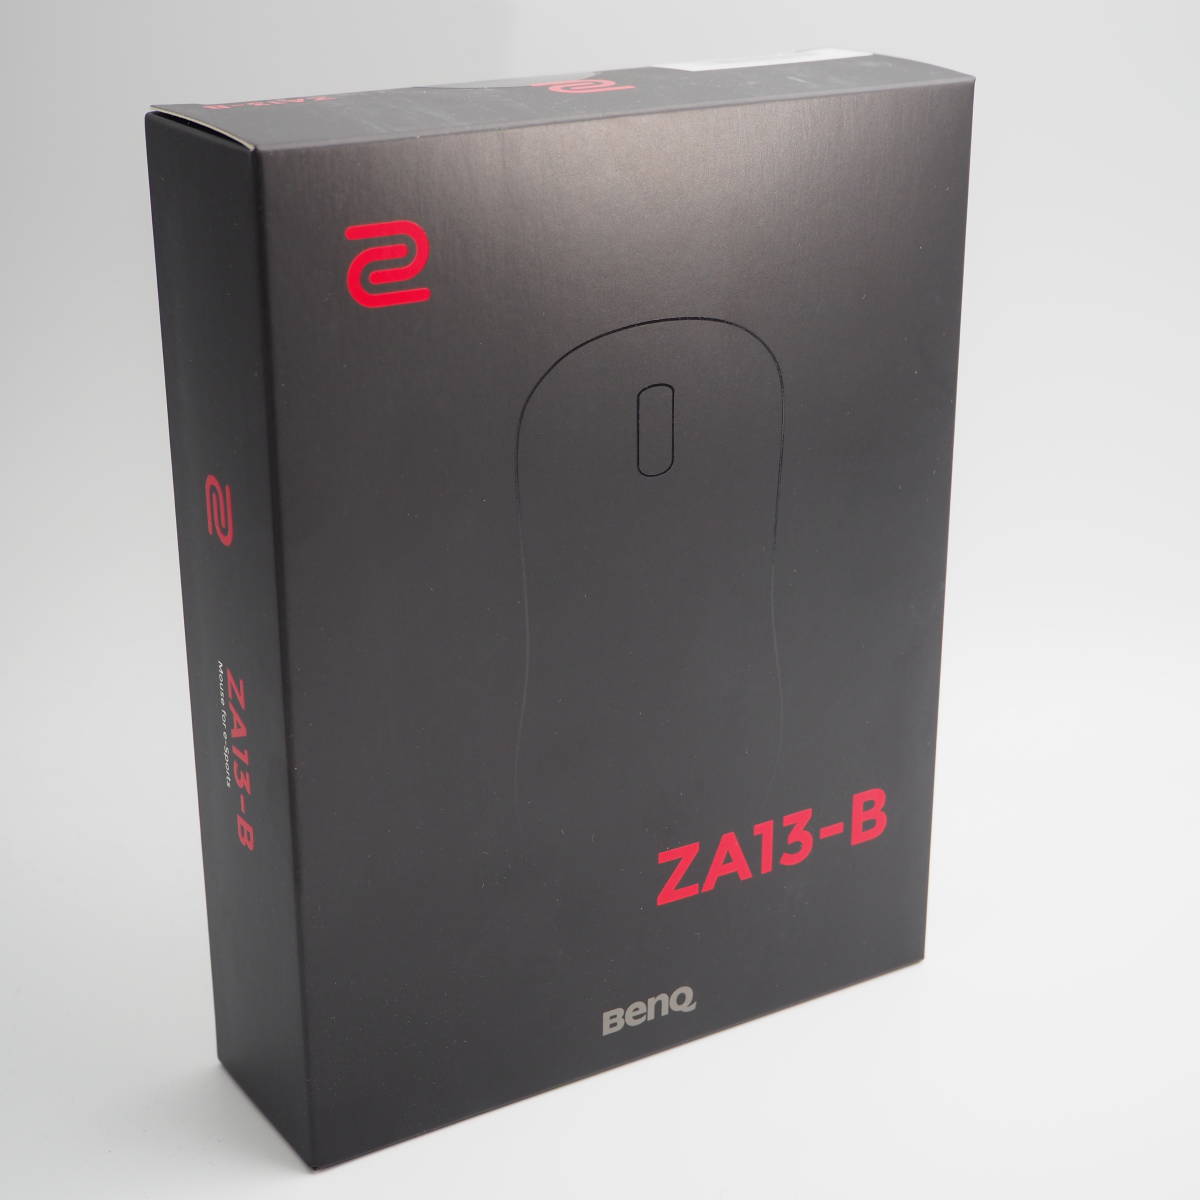 新品?正規品  【新品未開封】超人気 ゲーミングマウス ZA13-B Zowie BenQ PC周辺機器